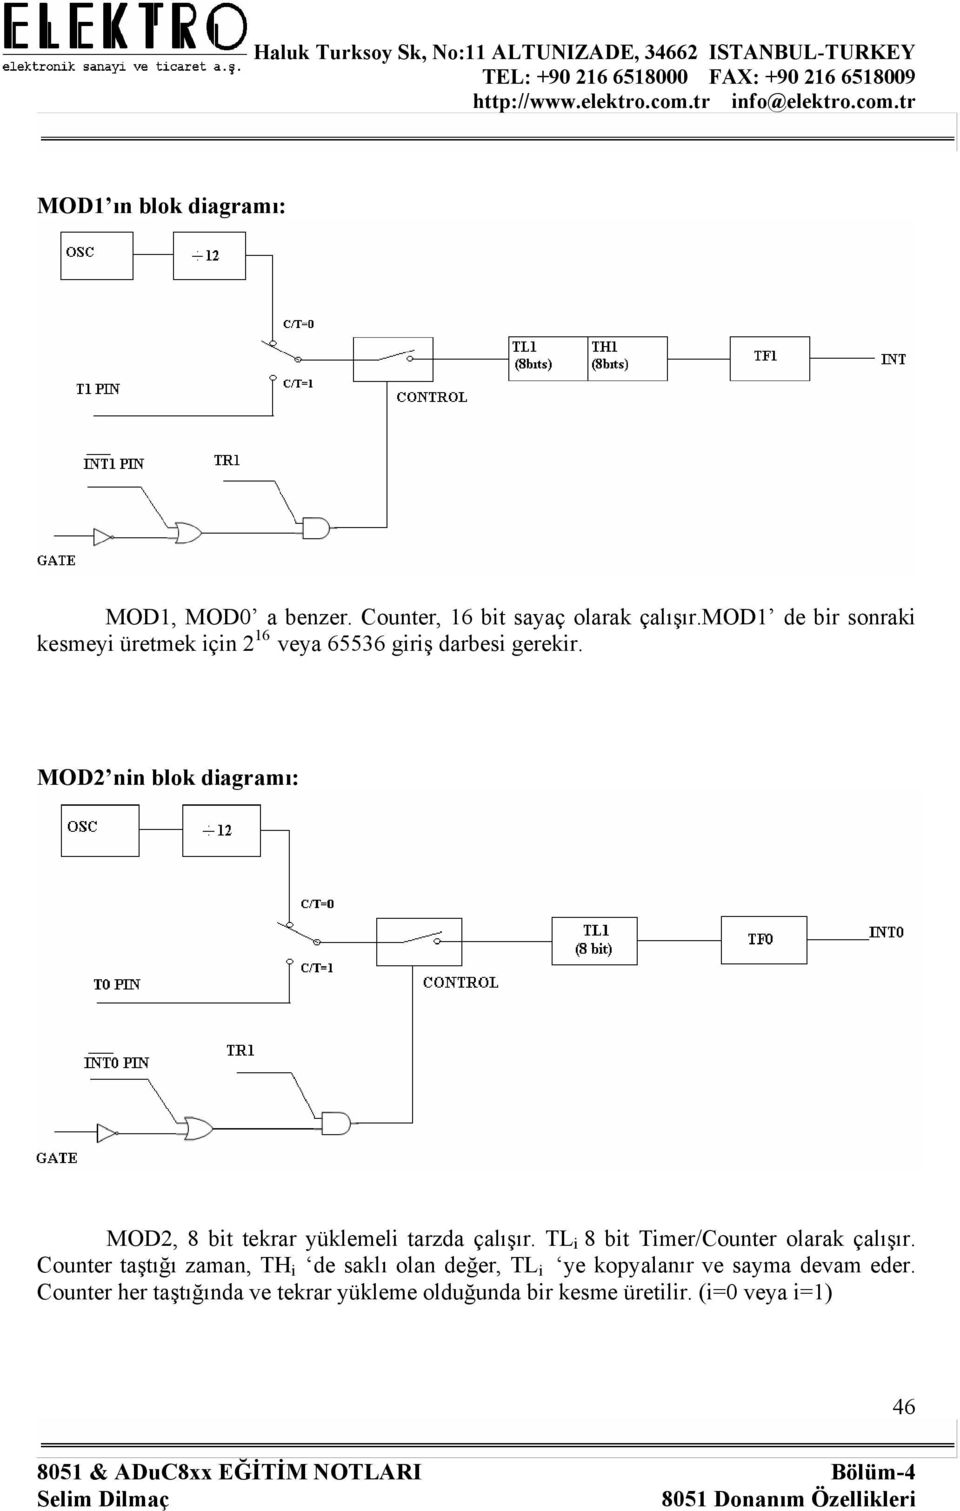 MOD2 nin blok diagramı: MOD2, 8 bit tekrar yüklemeli tarzda çalışır. TL i 8 bit Timer/Counter olarak çalışır.